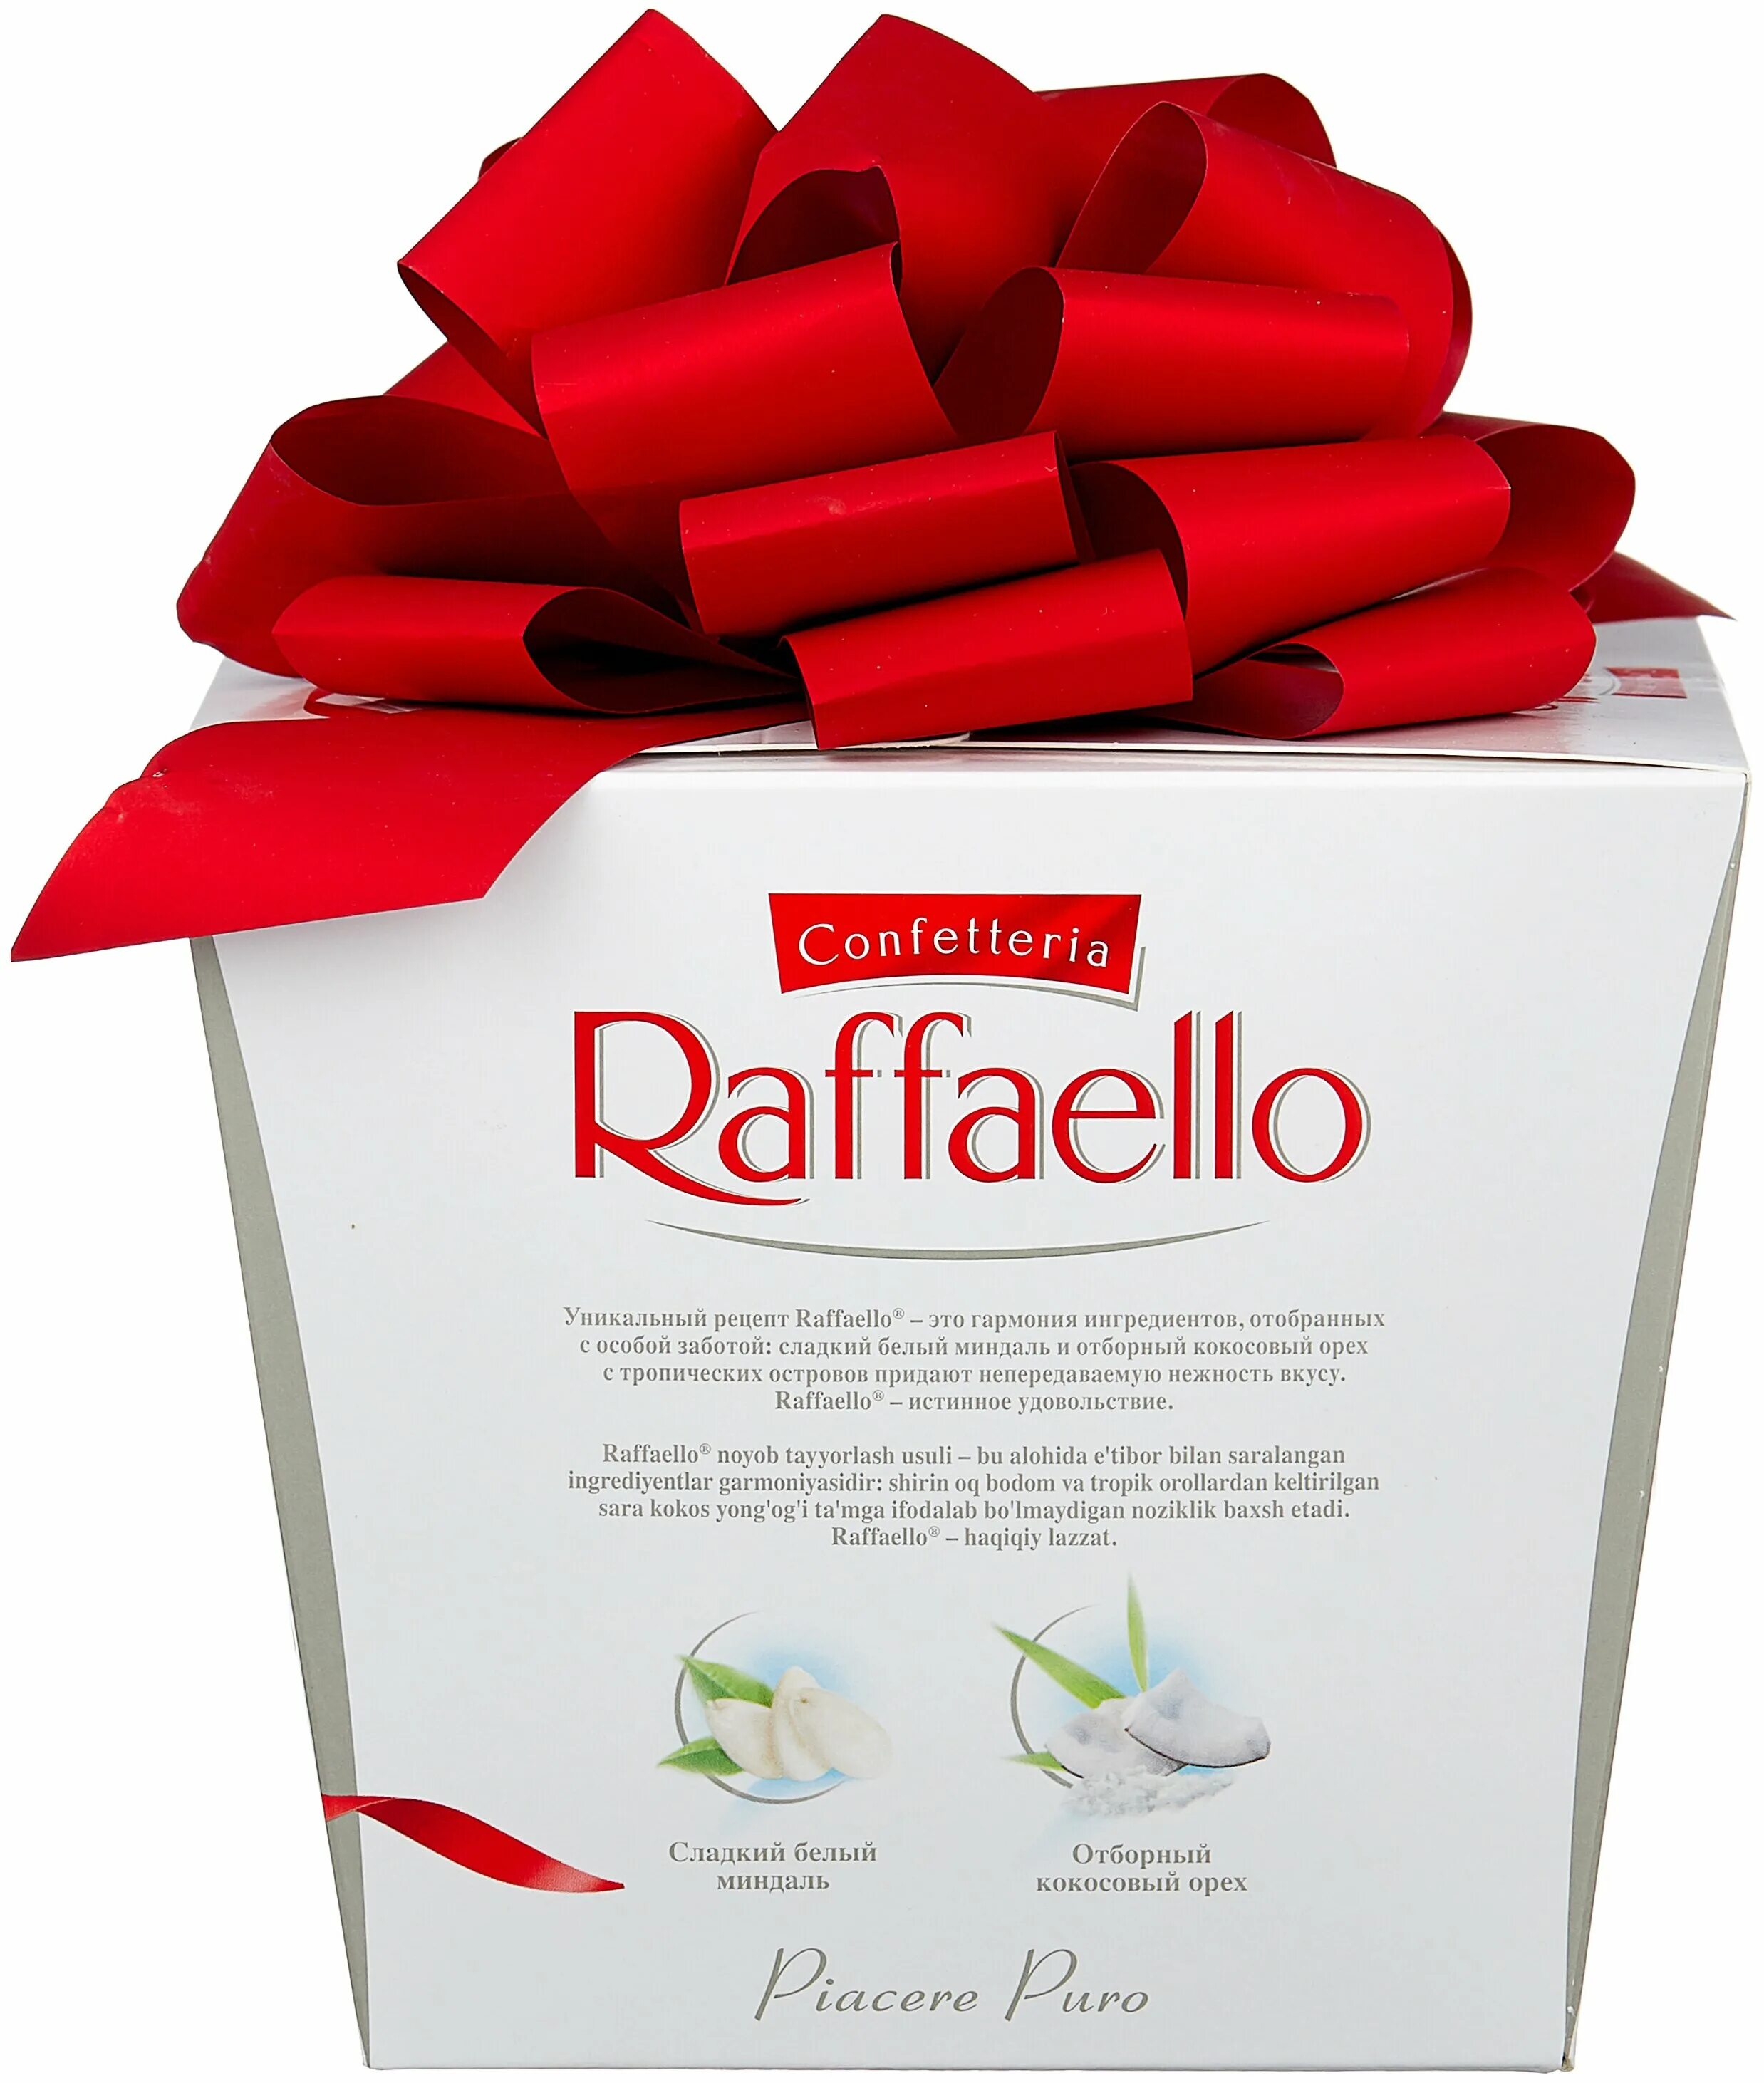 Сколько гр в рафаэлло. Raffaello большая коробка 500 г. Конфеты Raffaello 500 г. Рафаэлло 500 гр. Набор конфет Raffaello 500 г.